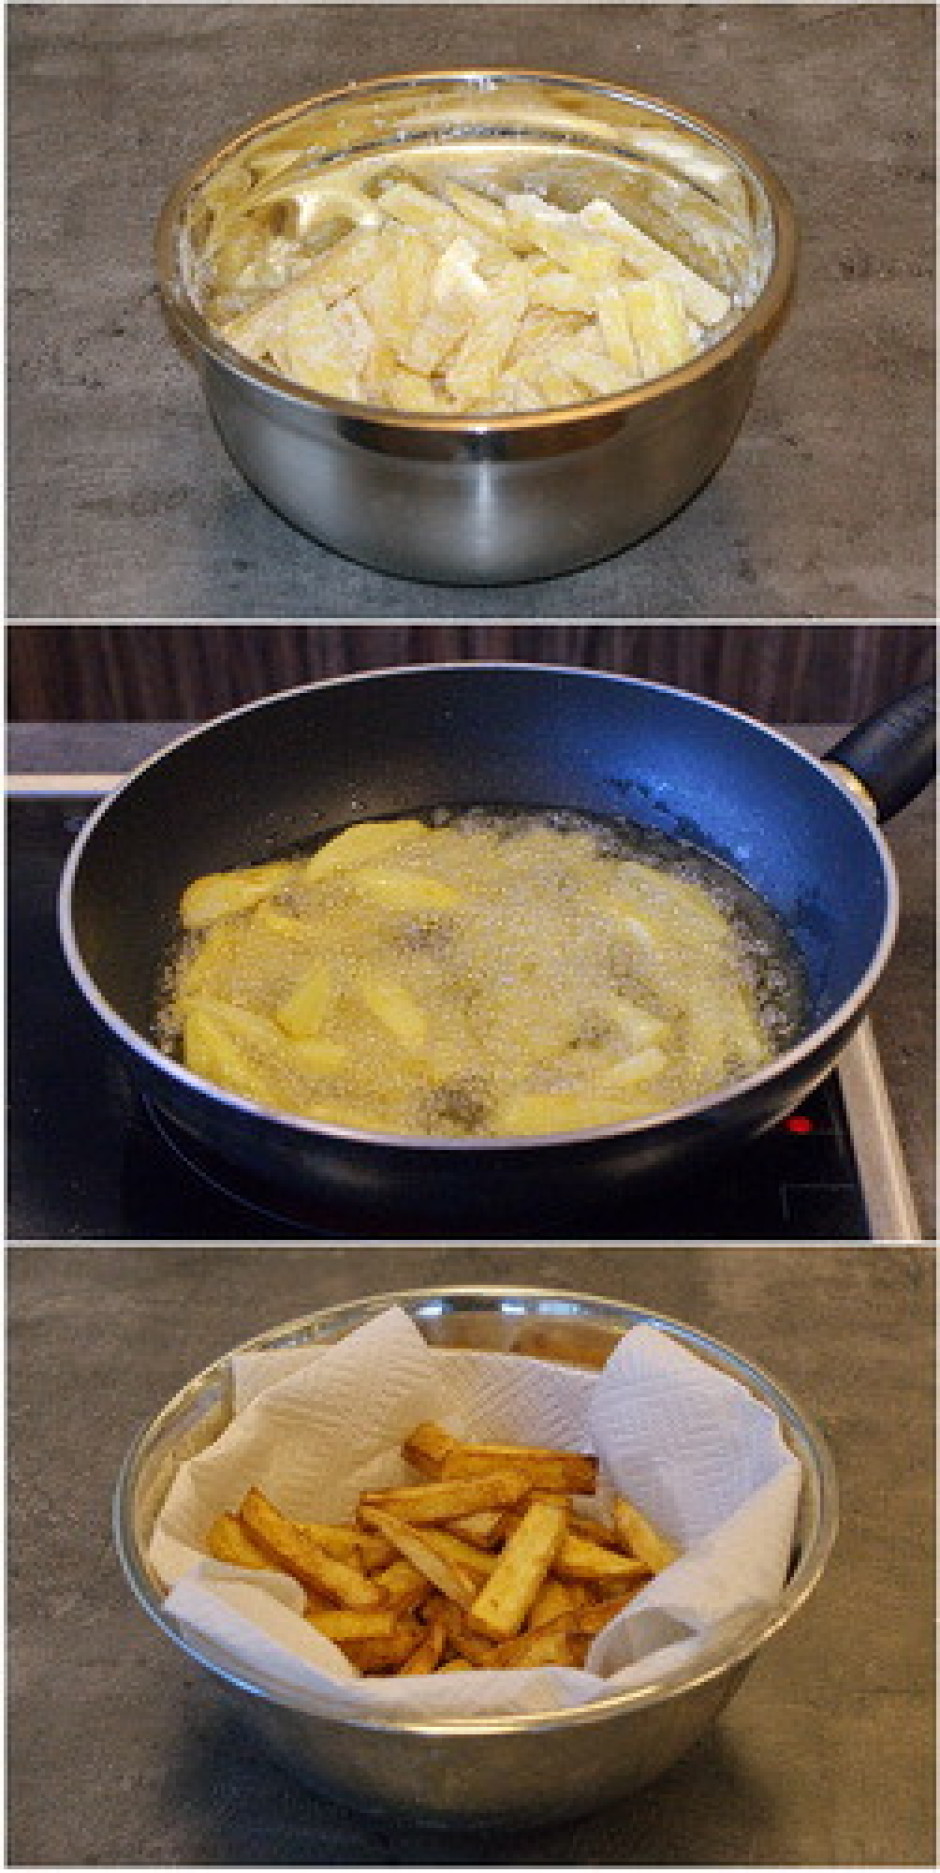 Kartupeļus izņem no eļļas un novieto uz salvetes, lai tā uzs...